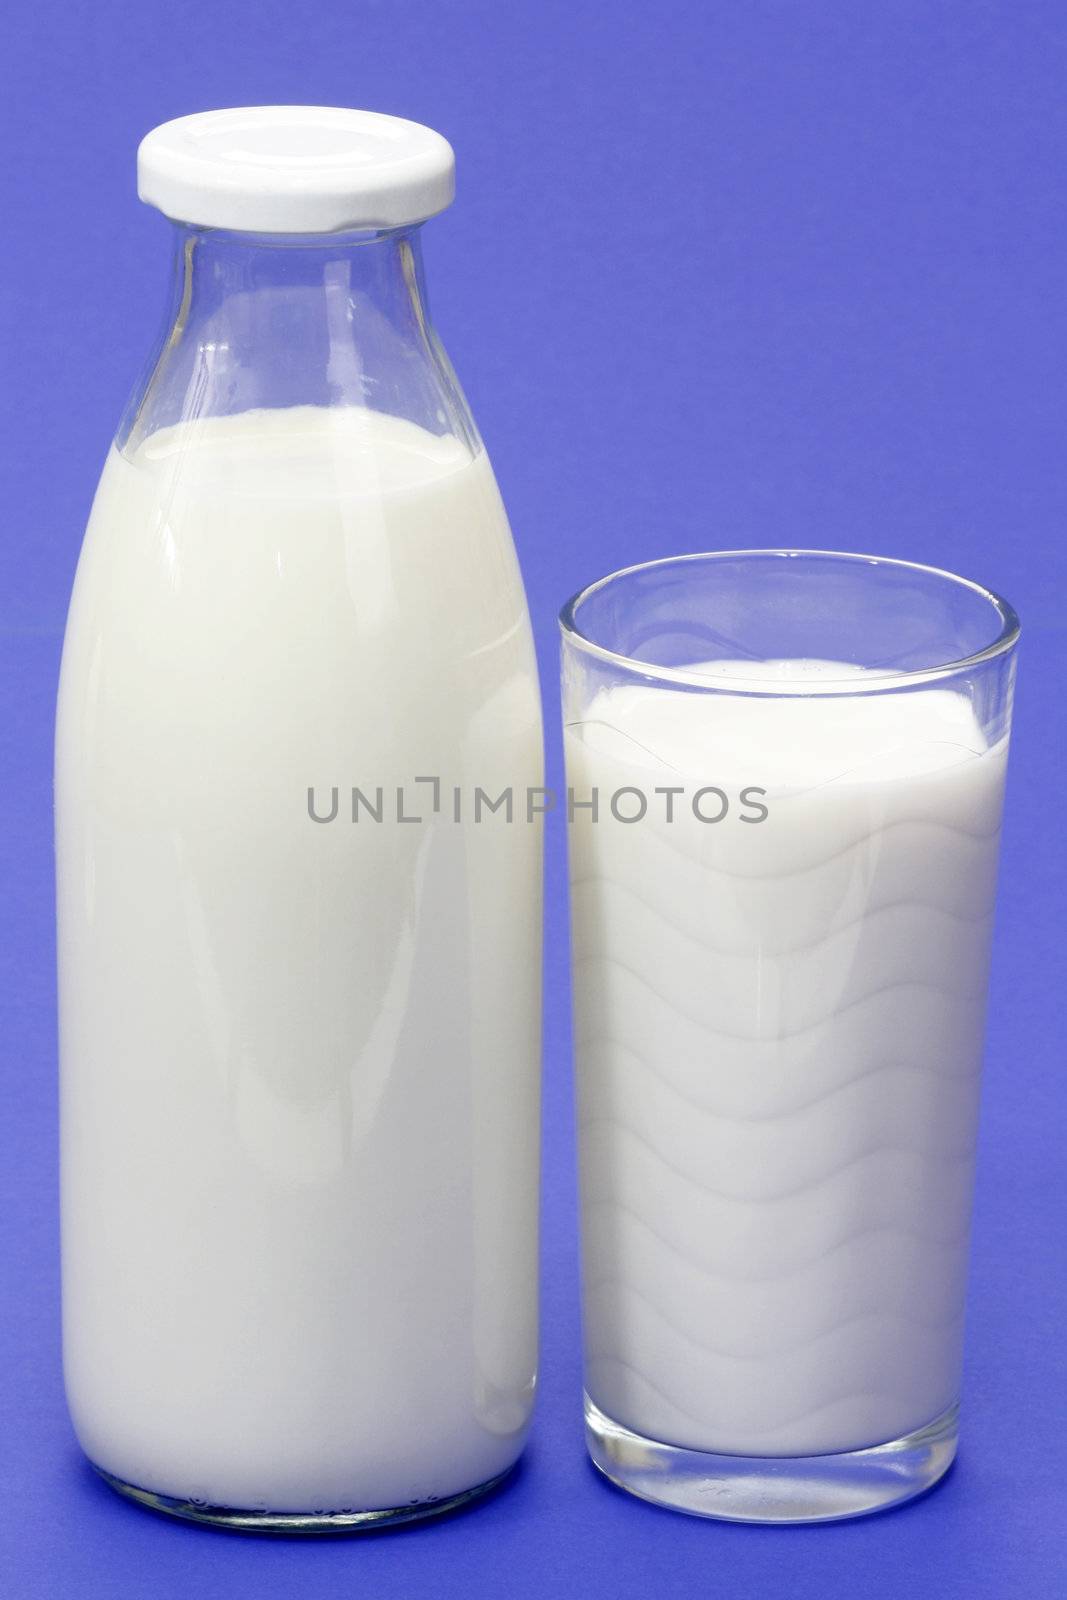 Milk by Teamarbeit